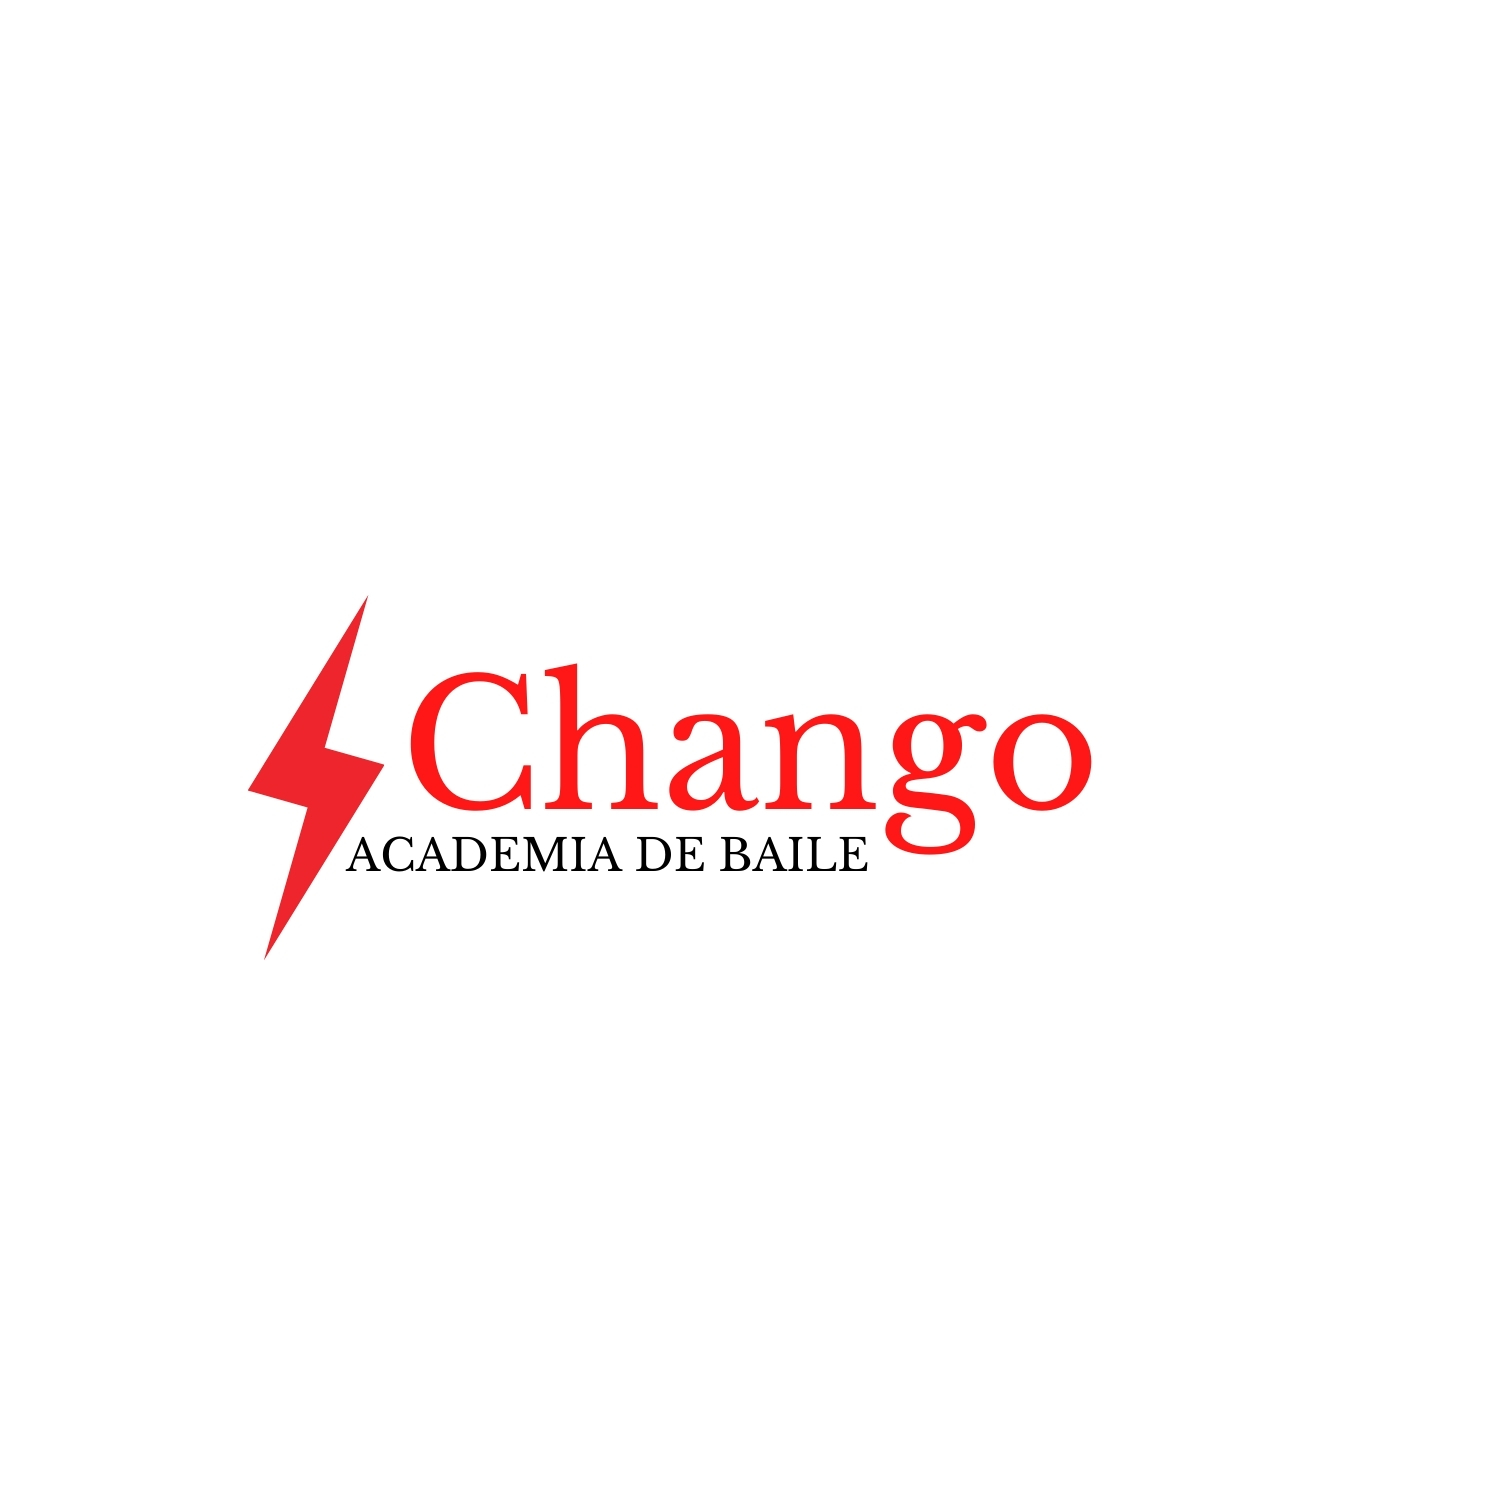 Chango Academia de Baile Vilanova i la Geltrú